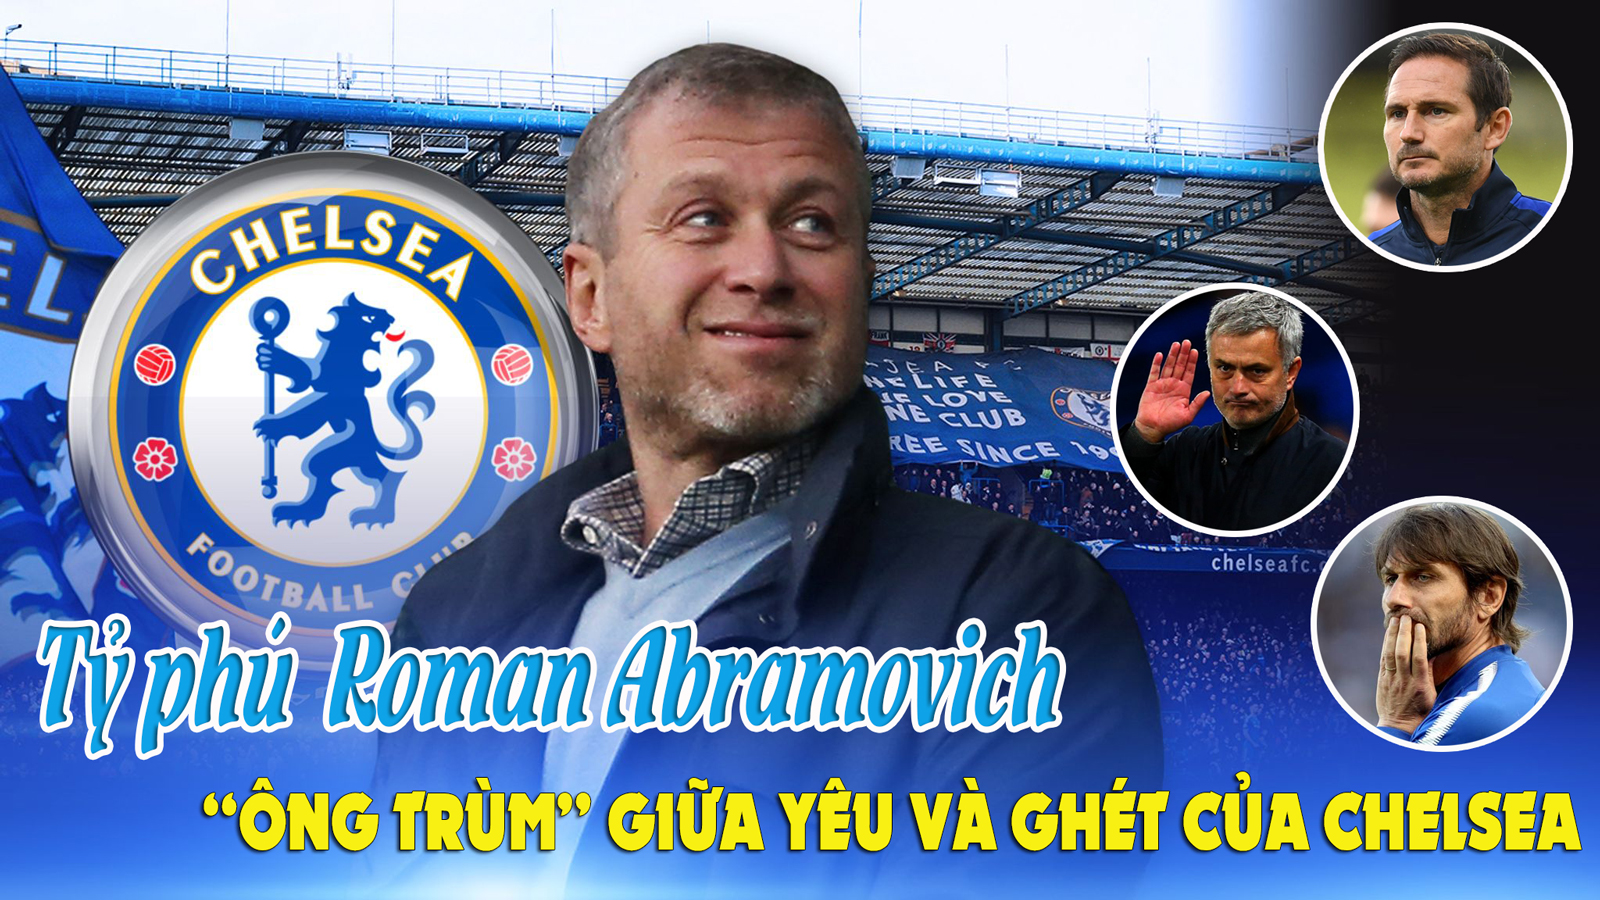 Tỷ phú Roman Abramovich: &#34;Ông trùm&#34; giữa yêu và ghét ở Chelsea - 1